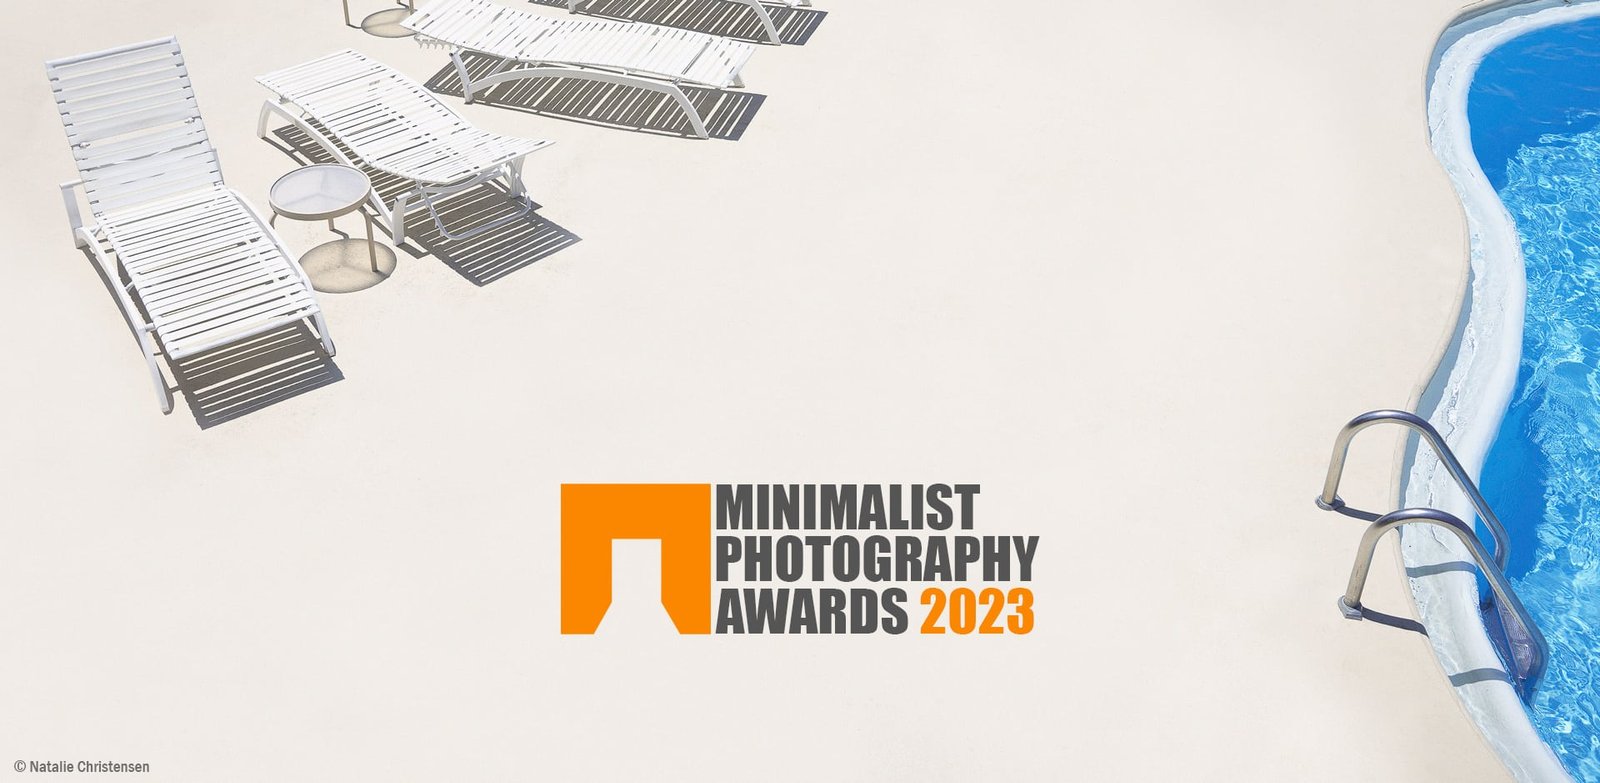 Minimalist photography awards 2023